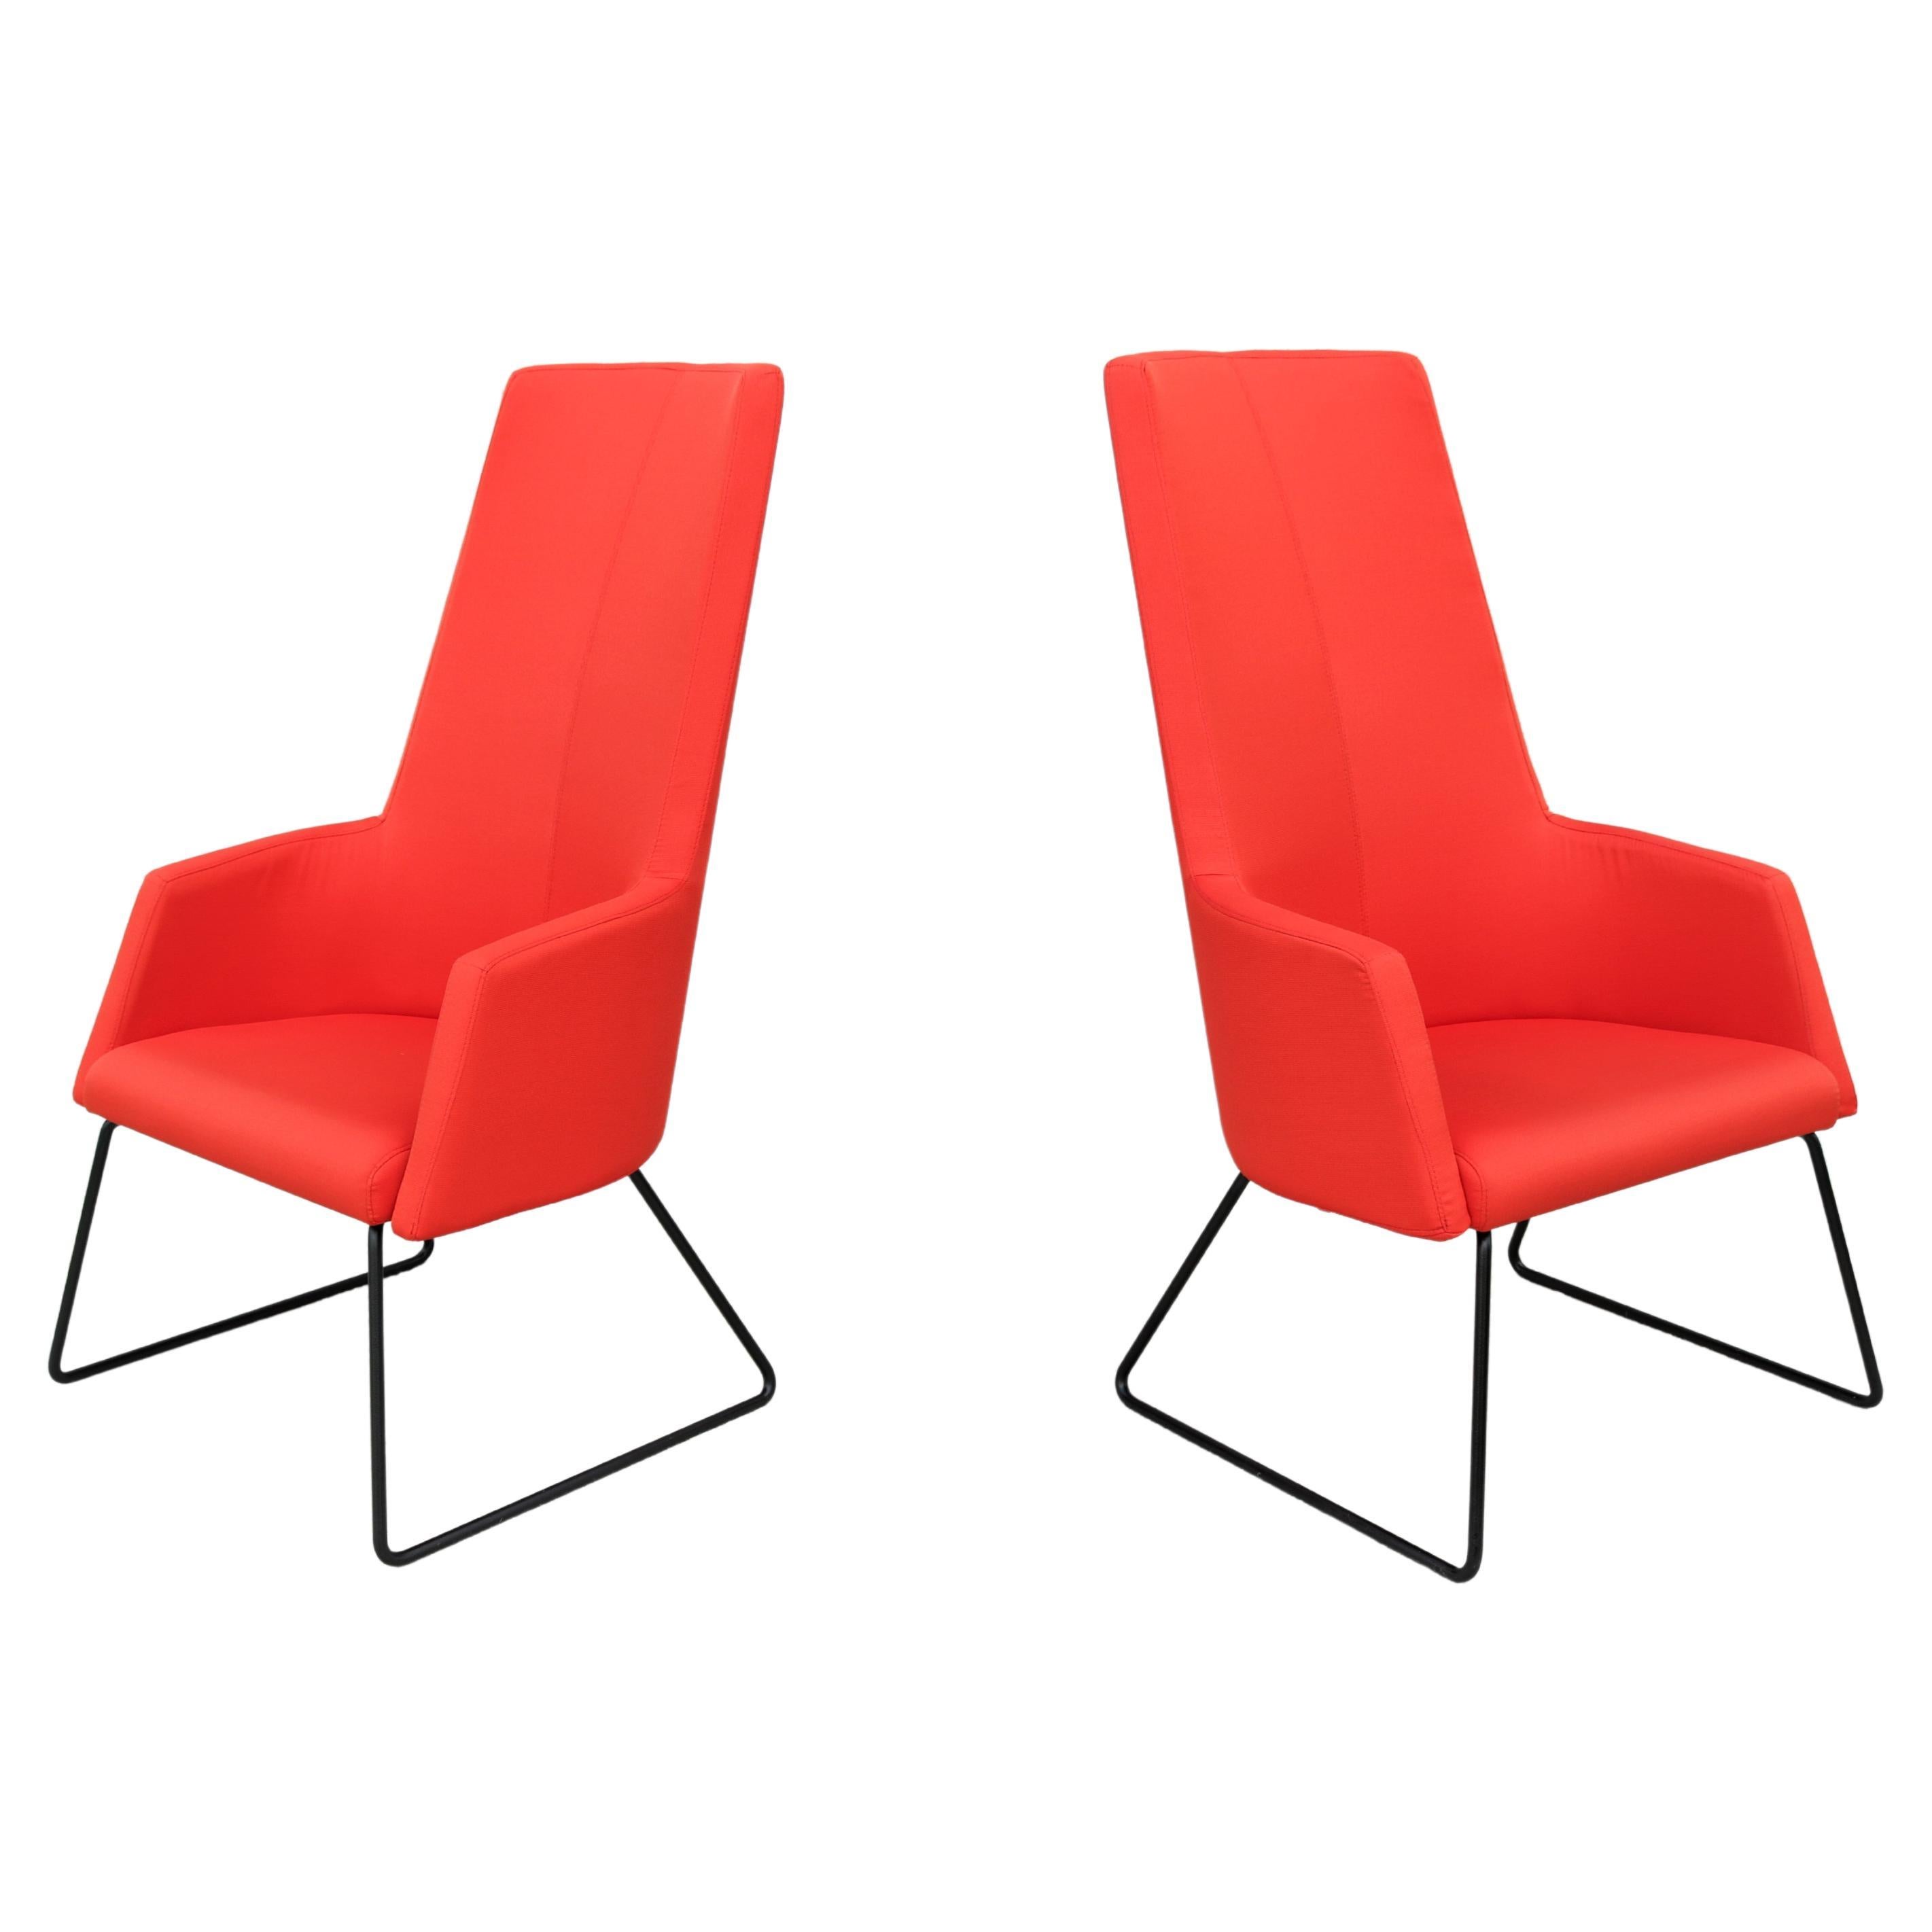 Paire de chaises longues Rouillard Solo à haut dossier, rouge, contemporaines et modernes